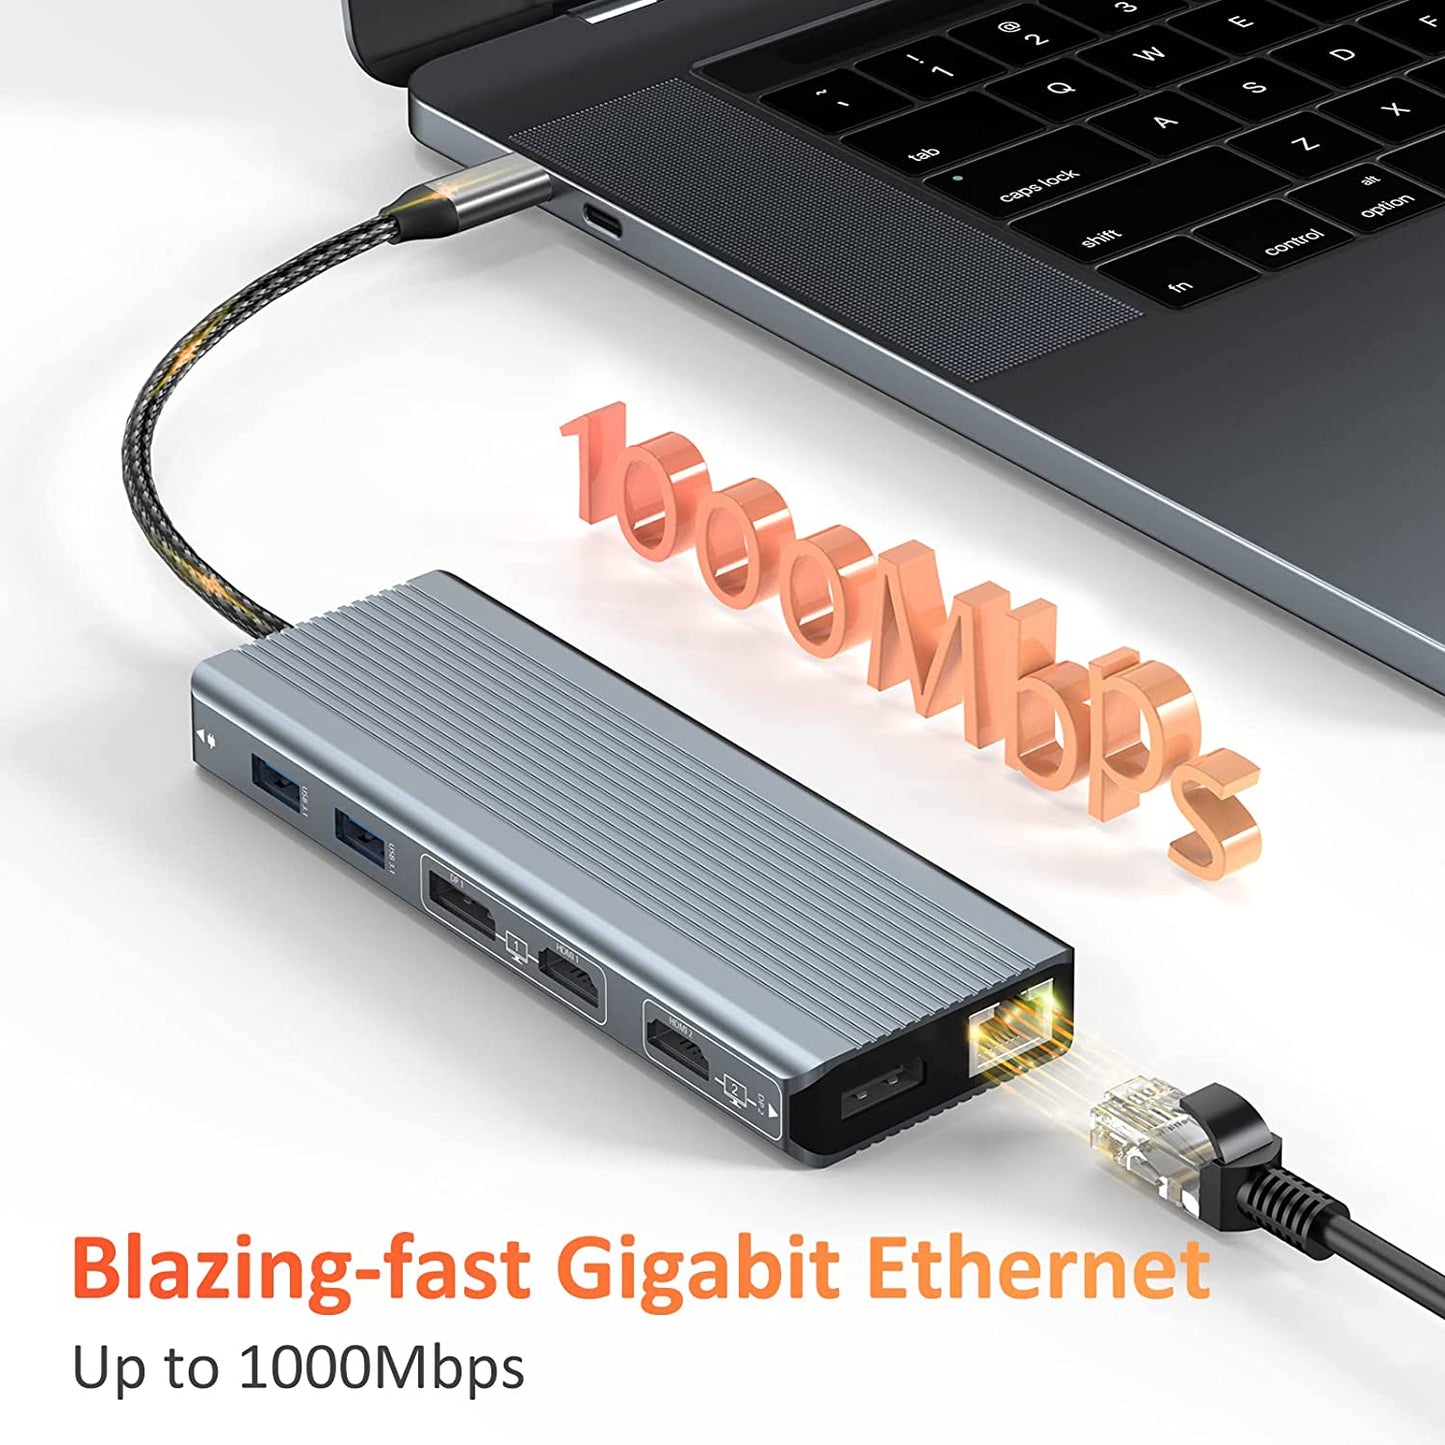 Tobenone UDS024 Docking Station Blazing-fast Gigabit Ethernet Up to 1000Mbps